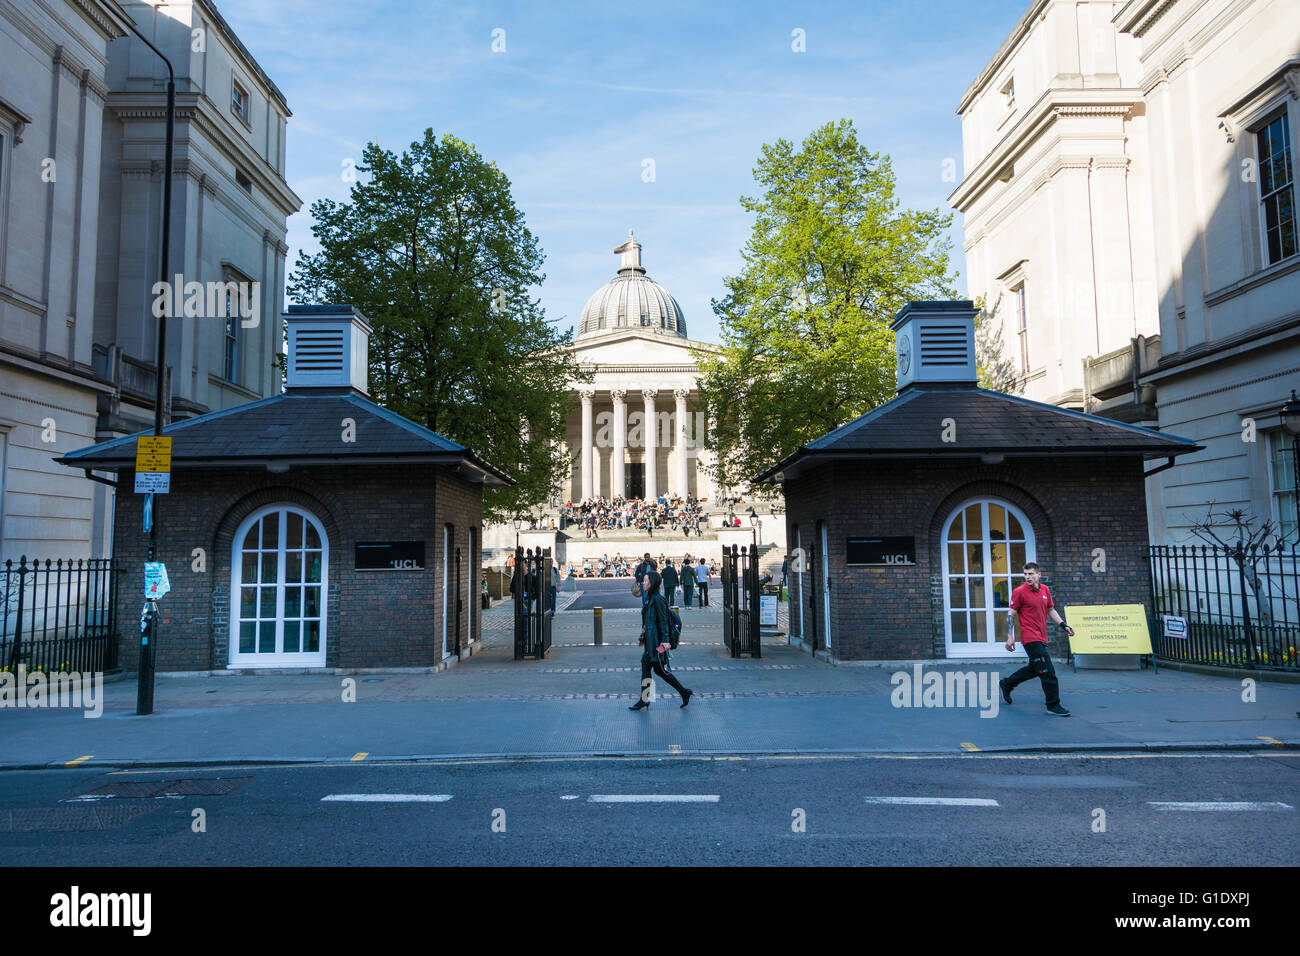 Der Eingang zur UCL und dem Quad, Gower Street, London, England, Großbritannien Stockfoto